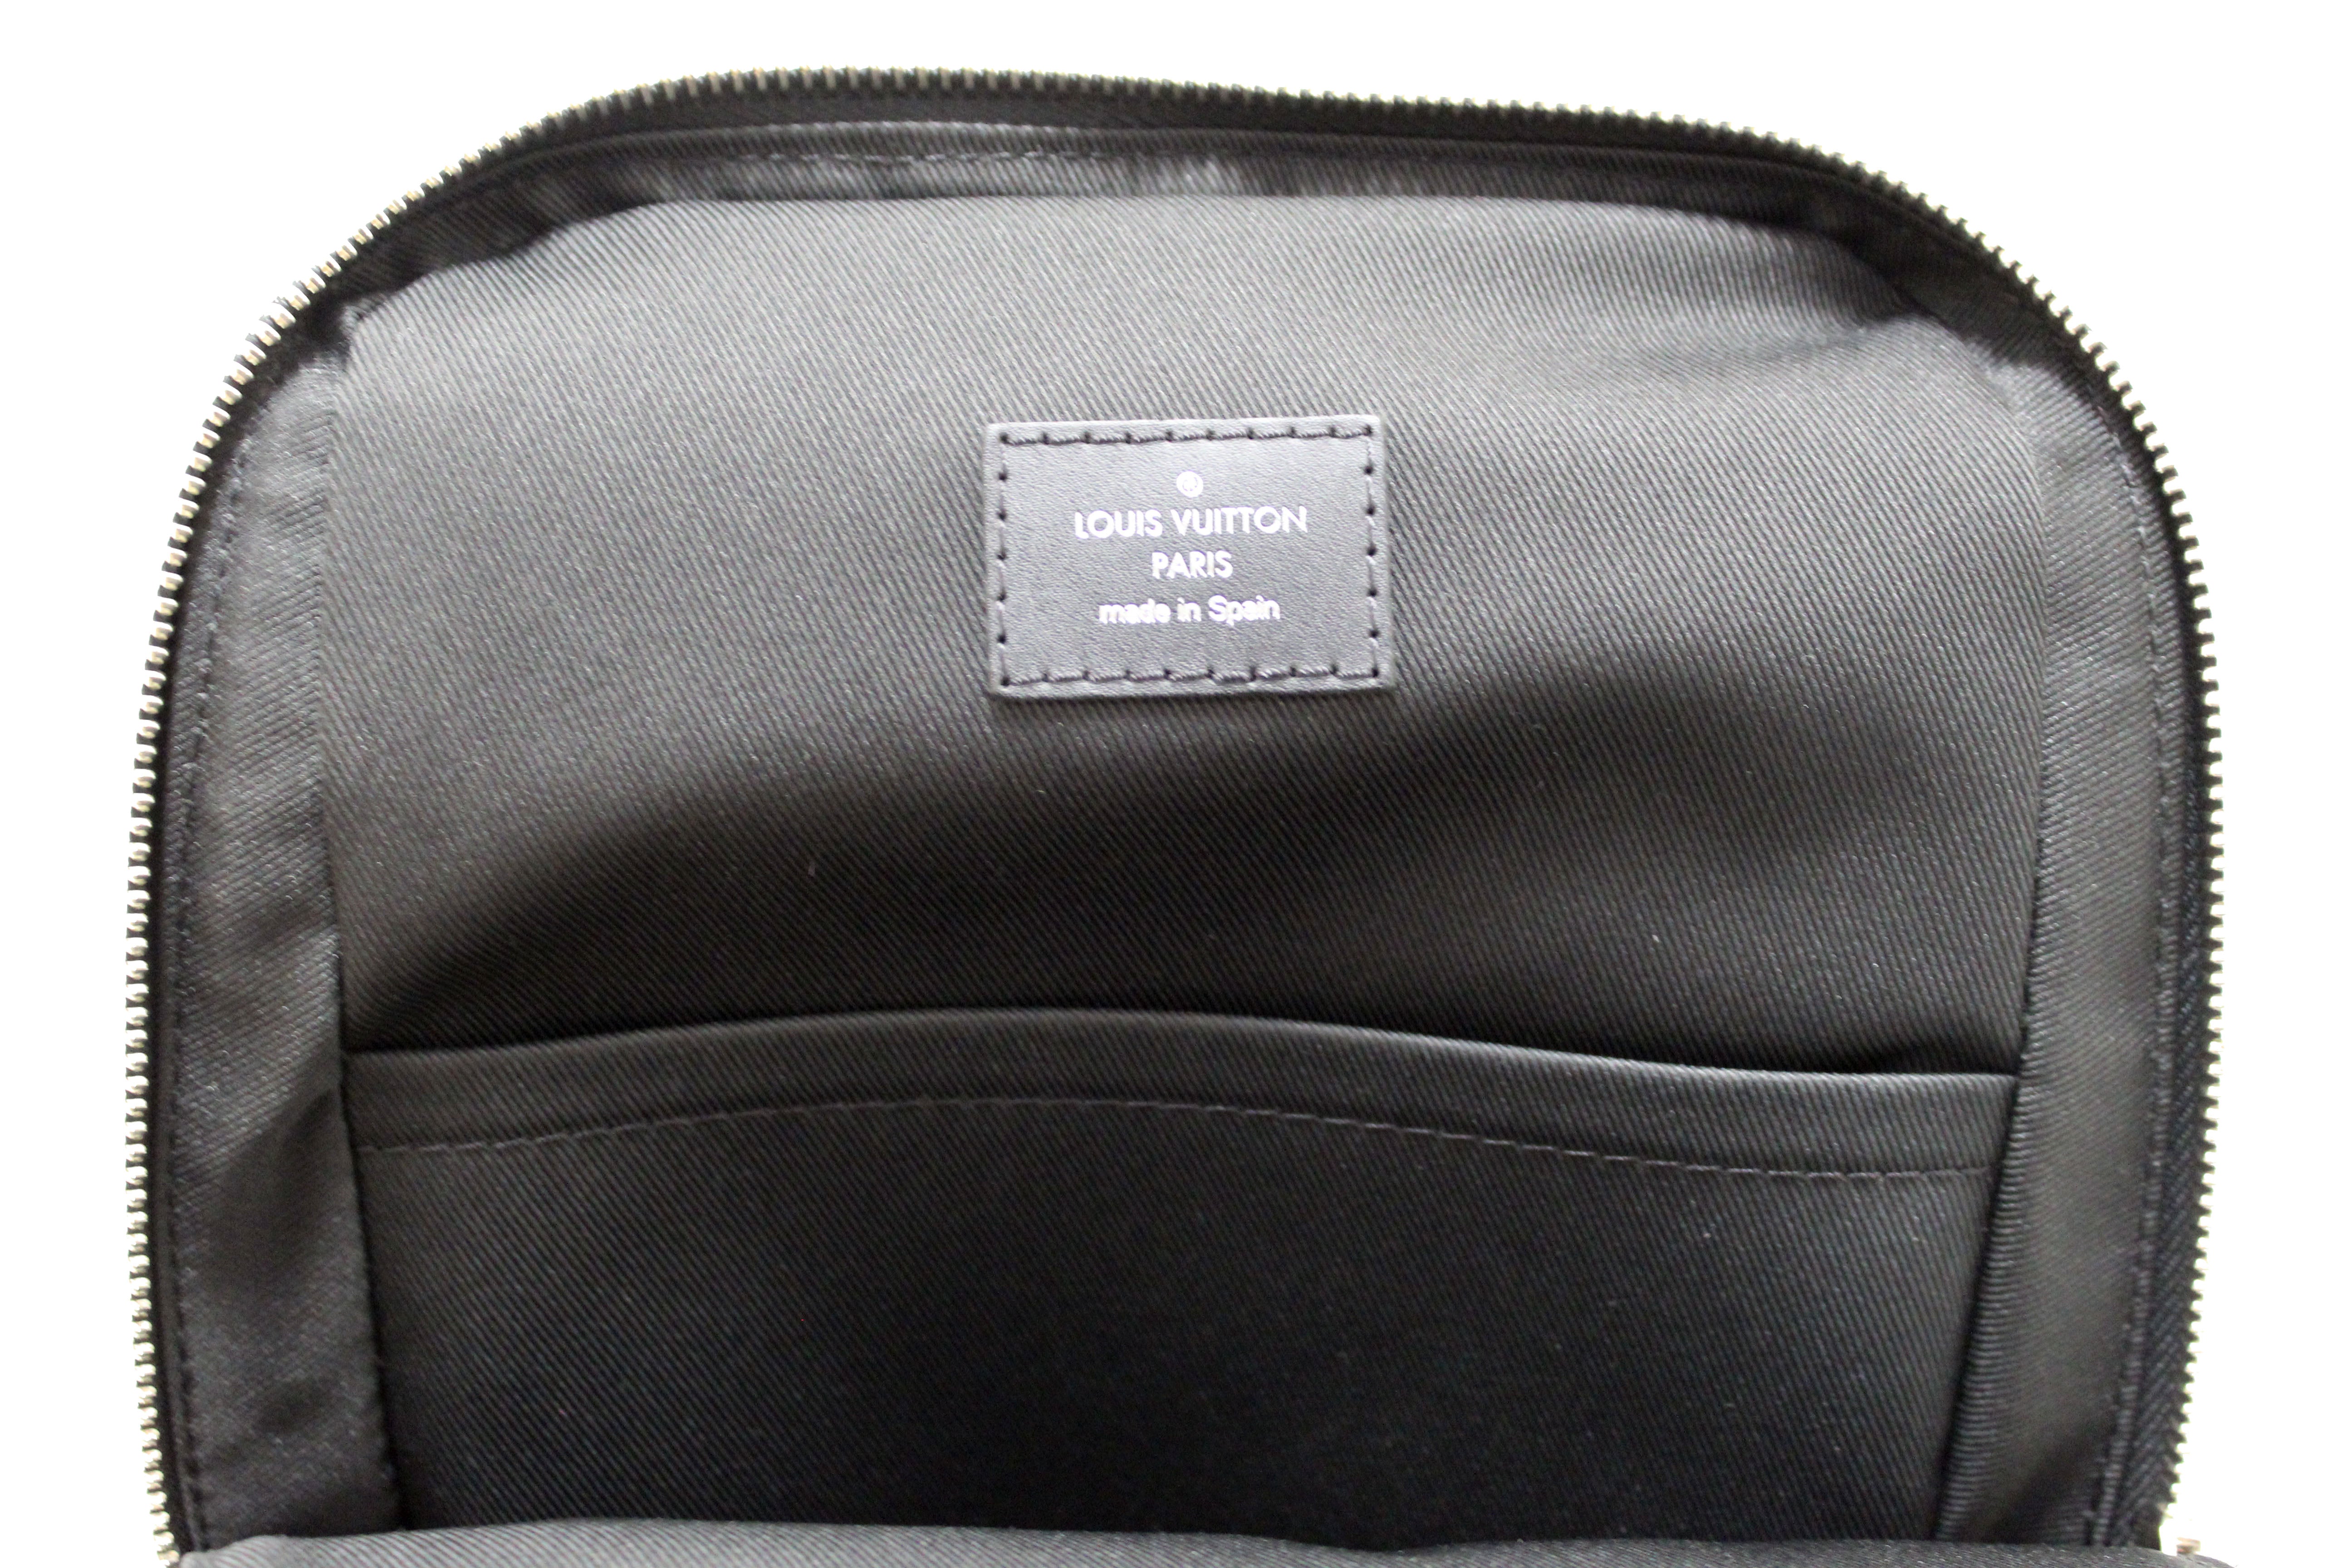 Authentic Louis Vuitton Damier Graphite Canvas Avenue Sling Bag